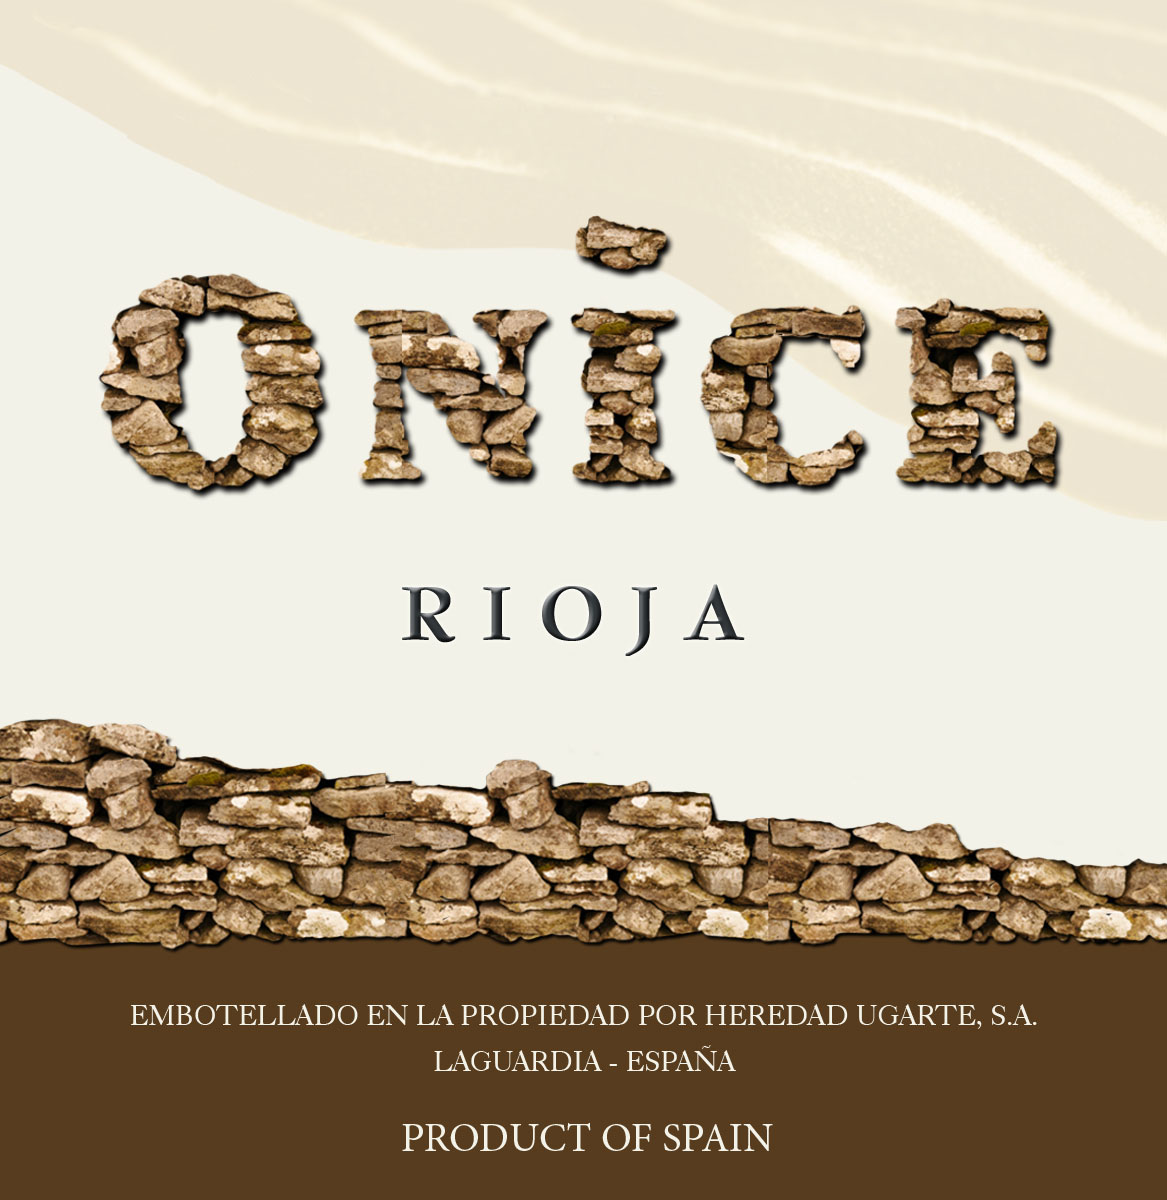 Ugarte - Onice Rioja label